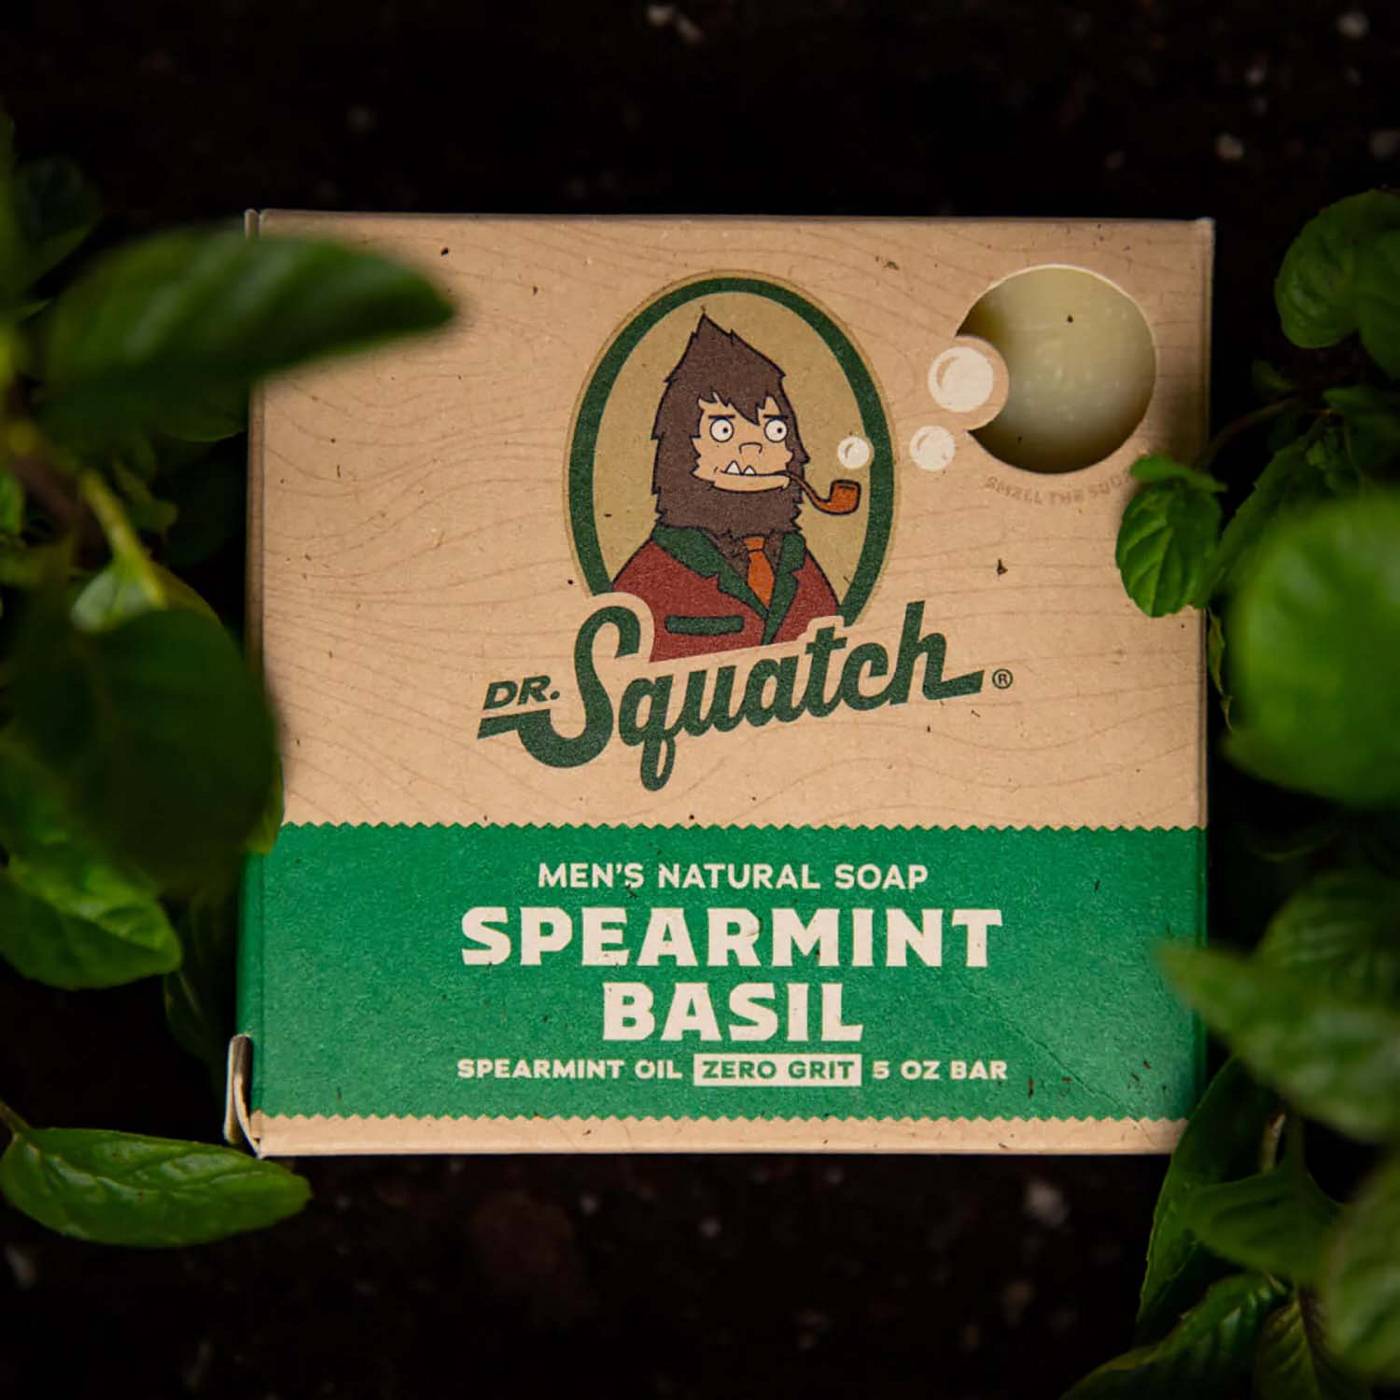 Dr. Squatch Men's Natural Soap - Spearmint Basil; image 3 of 3